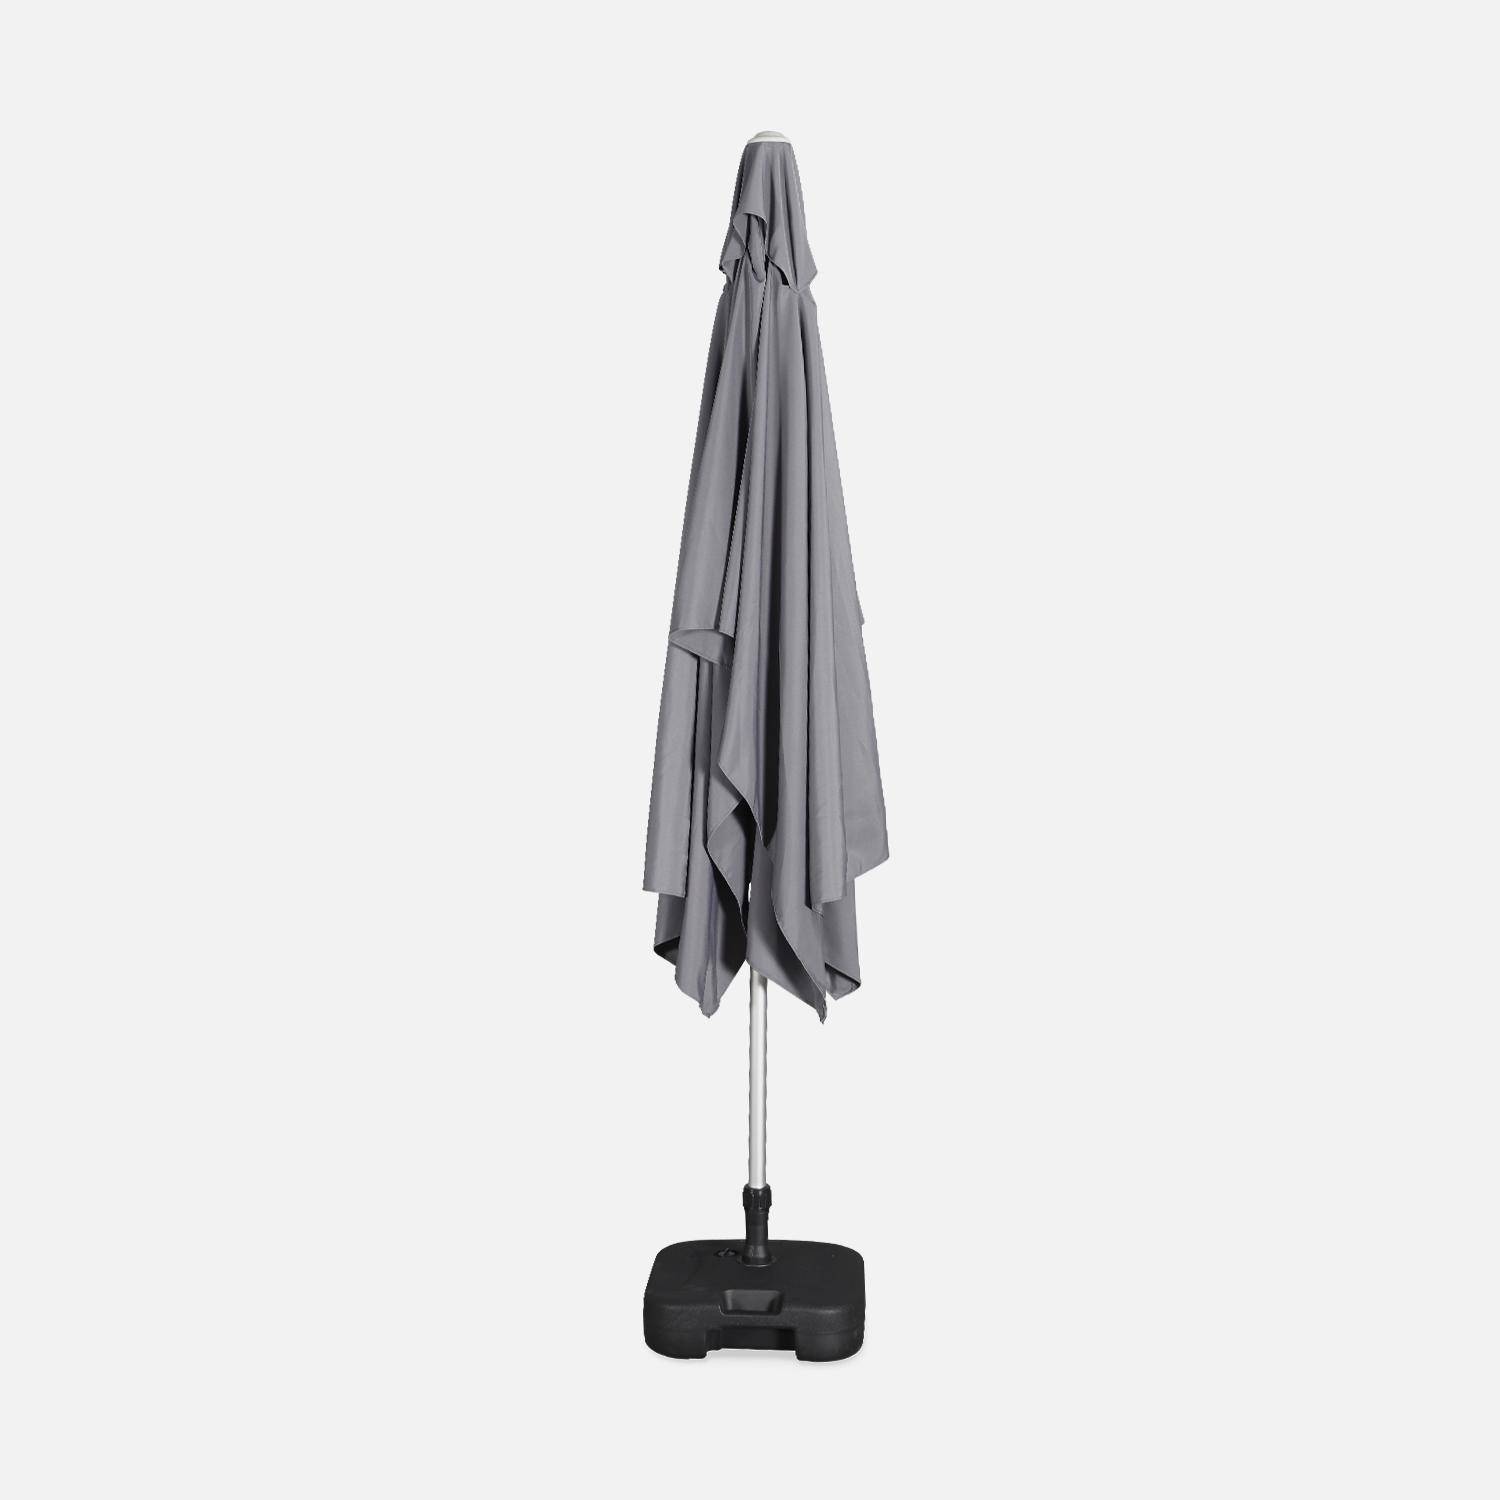 Parasol Wissant, 2x3m, couleur gris, mât central, aluminium anodisé orientable, manivelle d'ouverture  Photo4